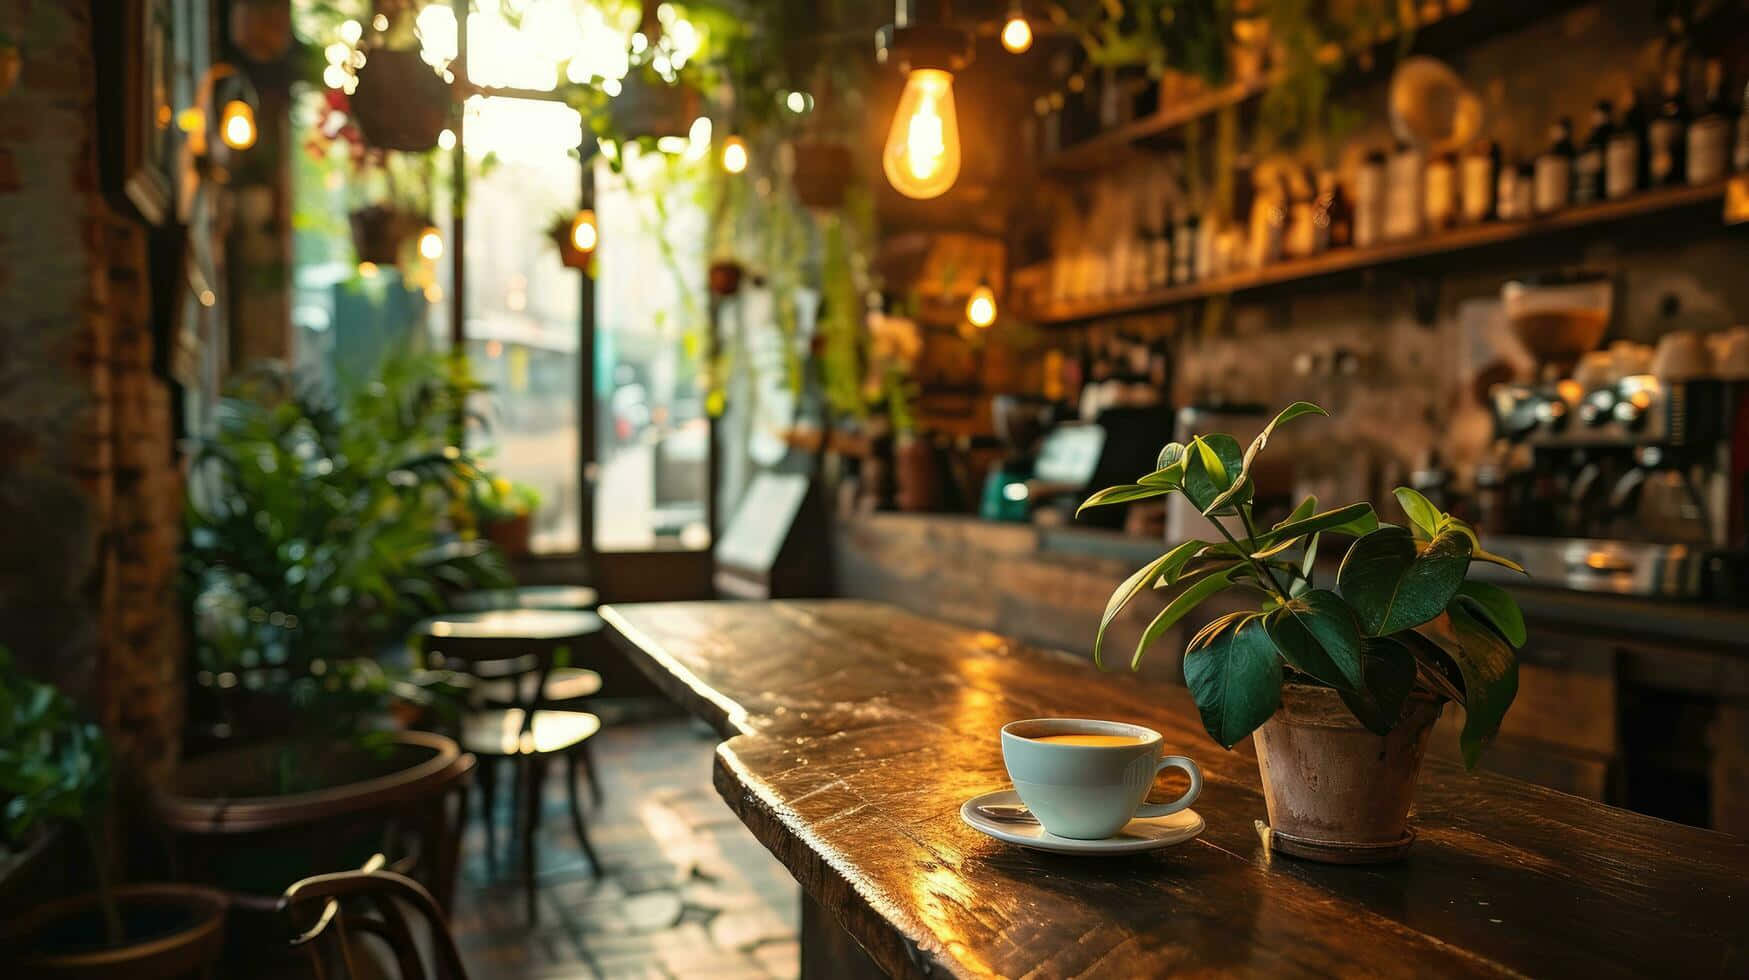 Cozy Coffee Shop Interiorwith Plants Wallpaper